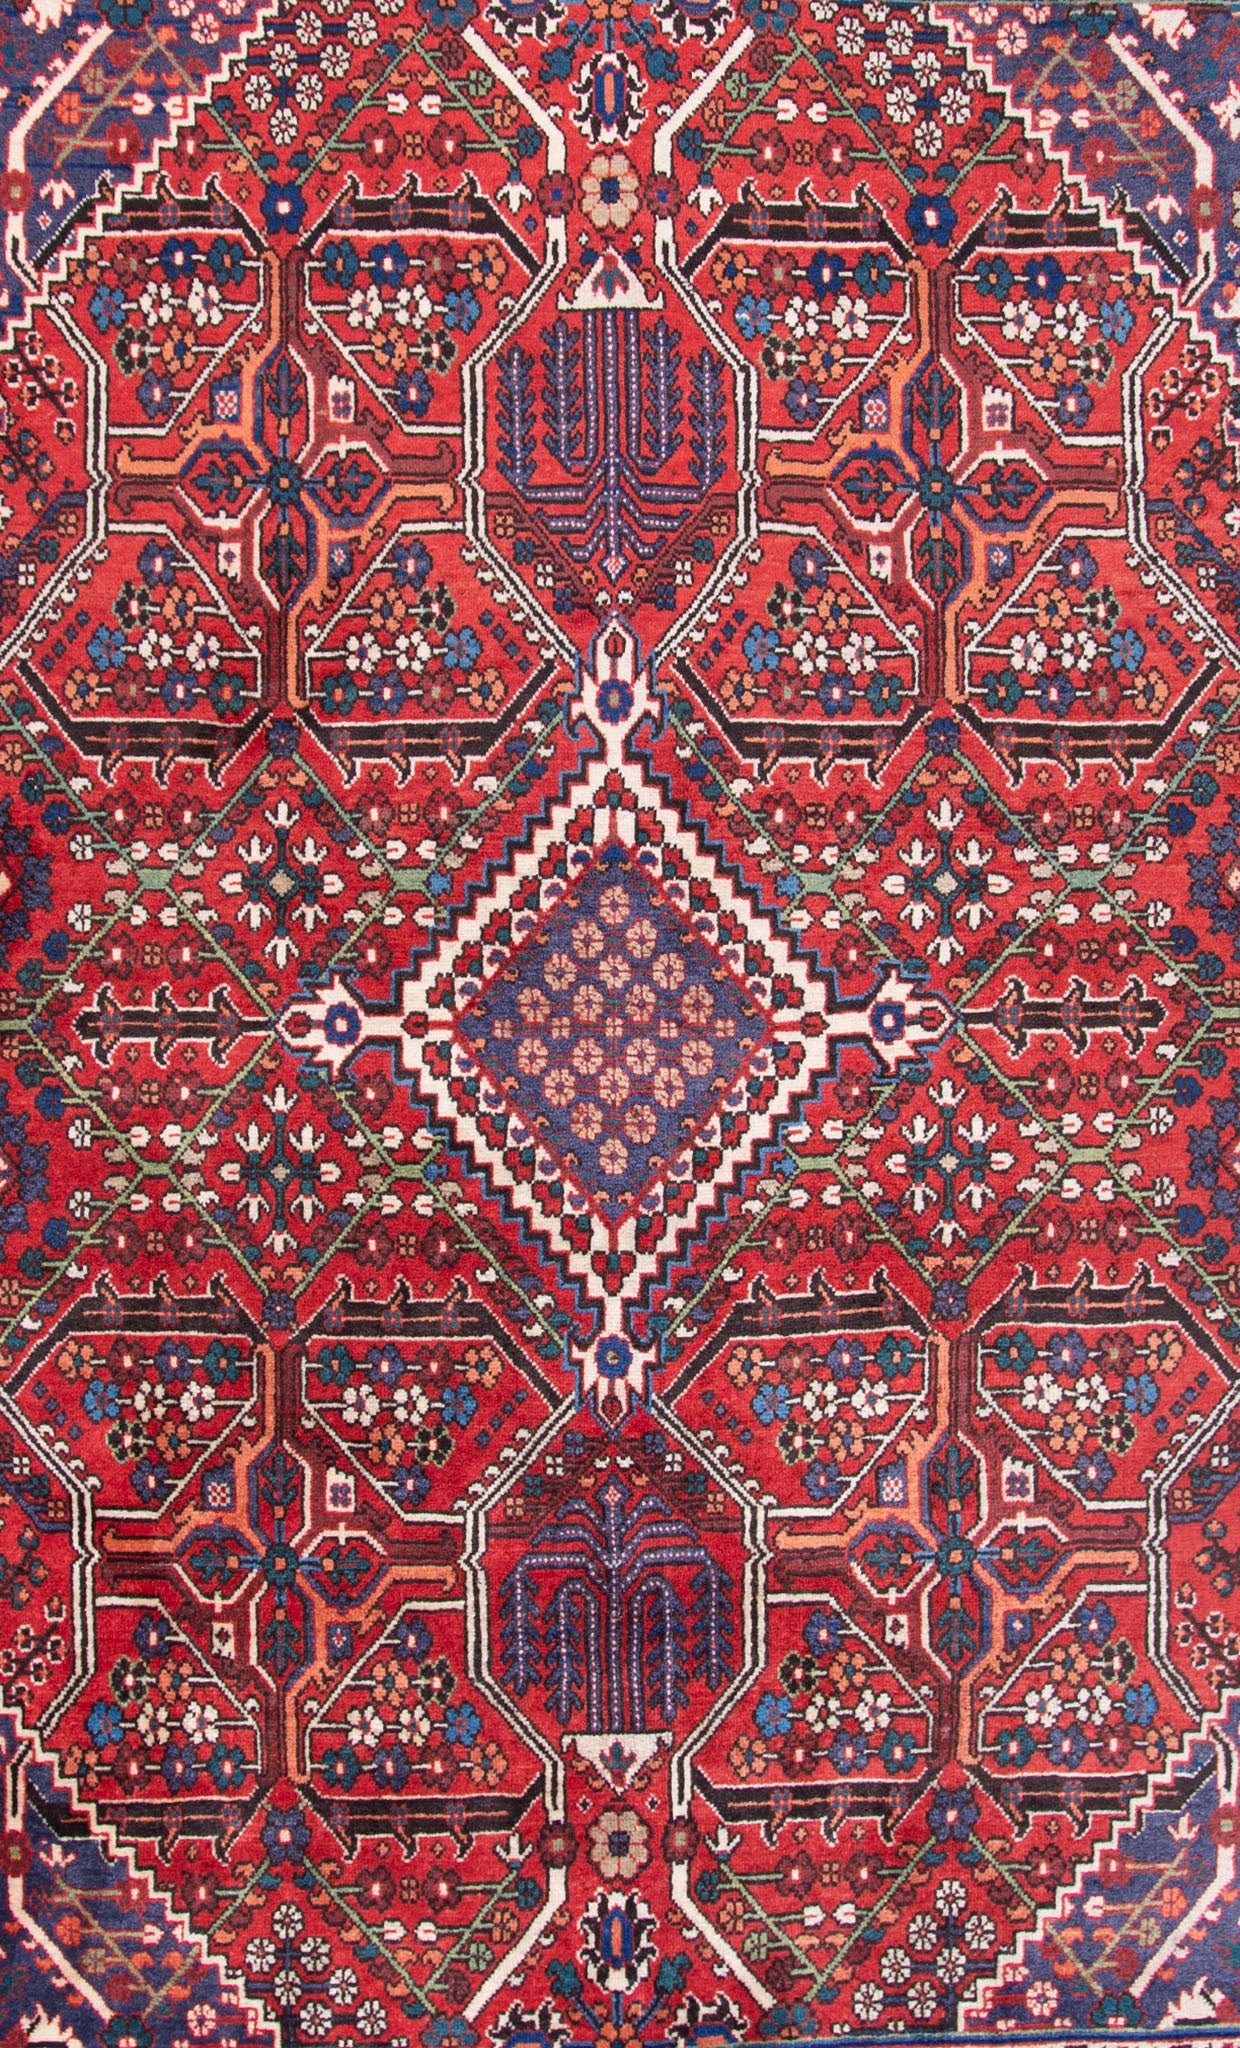 OLD ダイヤ型メダリオンと幾何学模様の存在感あるメイメ産絨毯。バーガンディのフィールドに小花をあしらった菱形パターンが反復する独特なデザイン。サイズ：108 x 160m